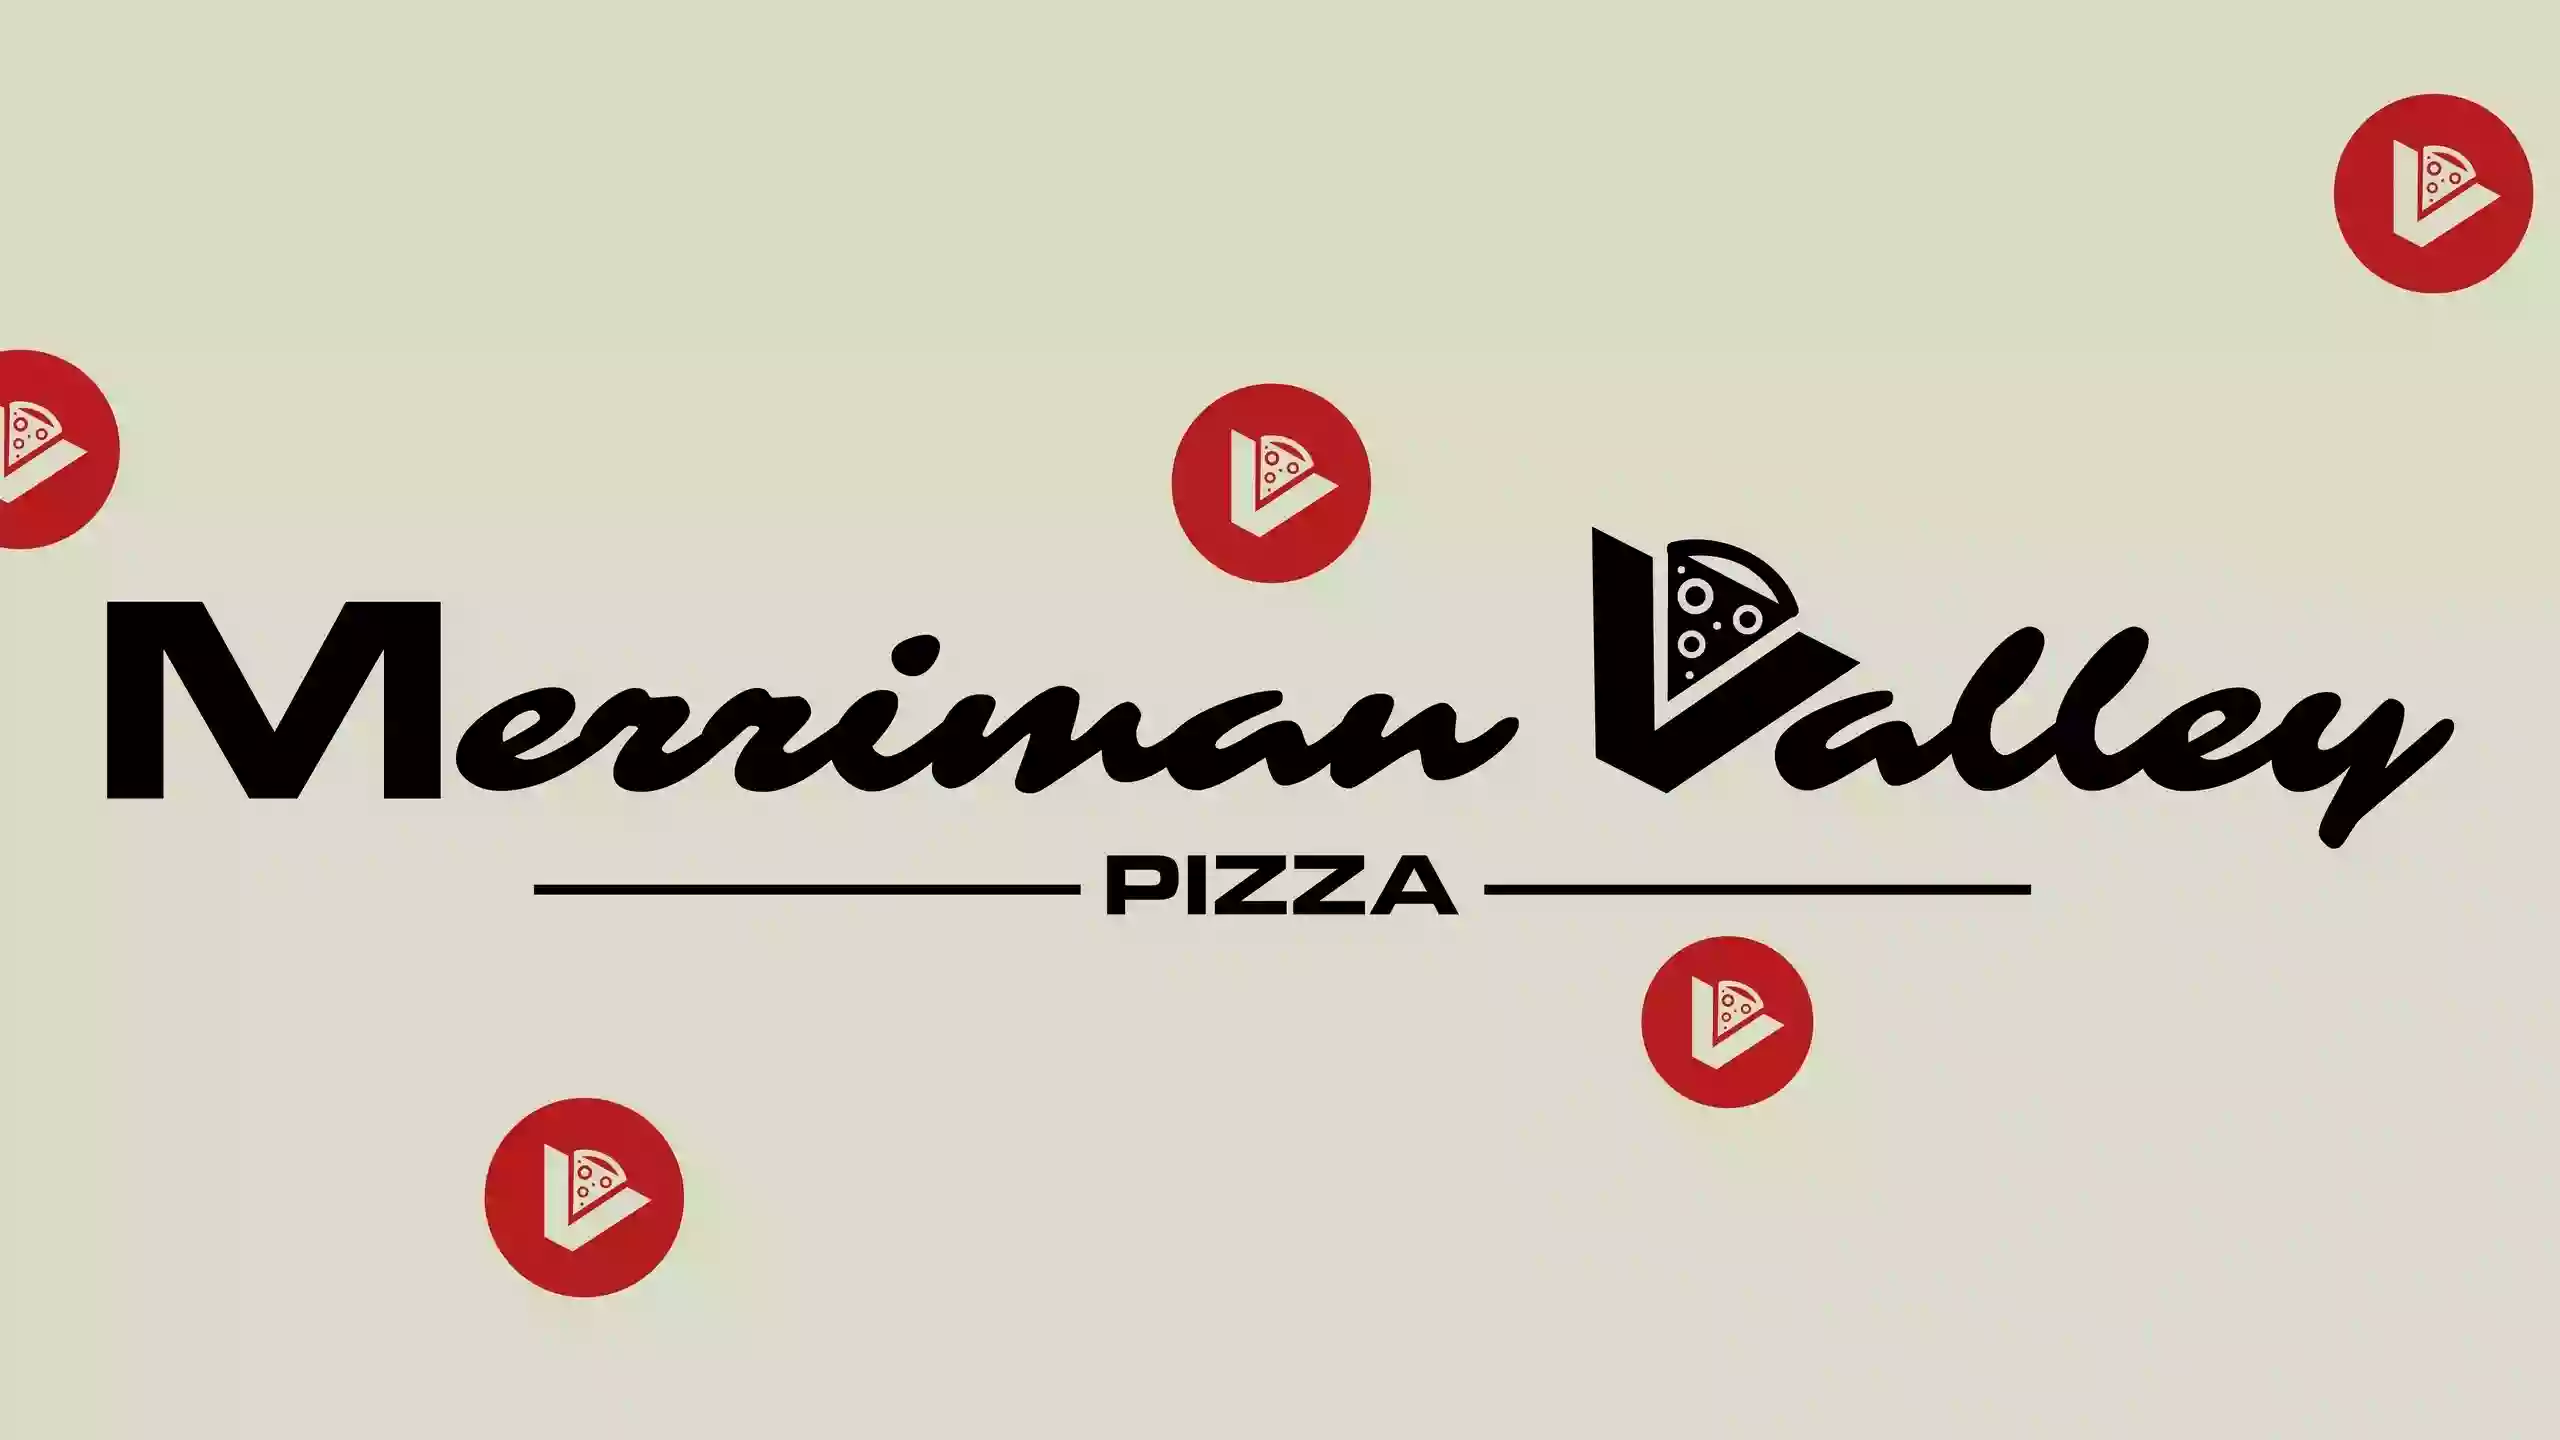 Merriman Valley Pizza